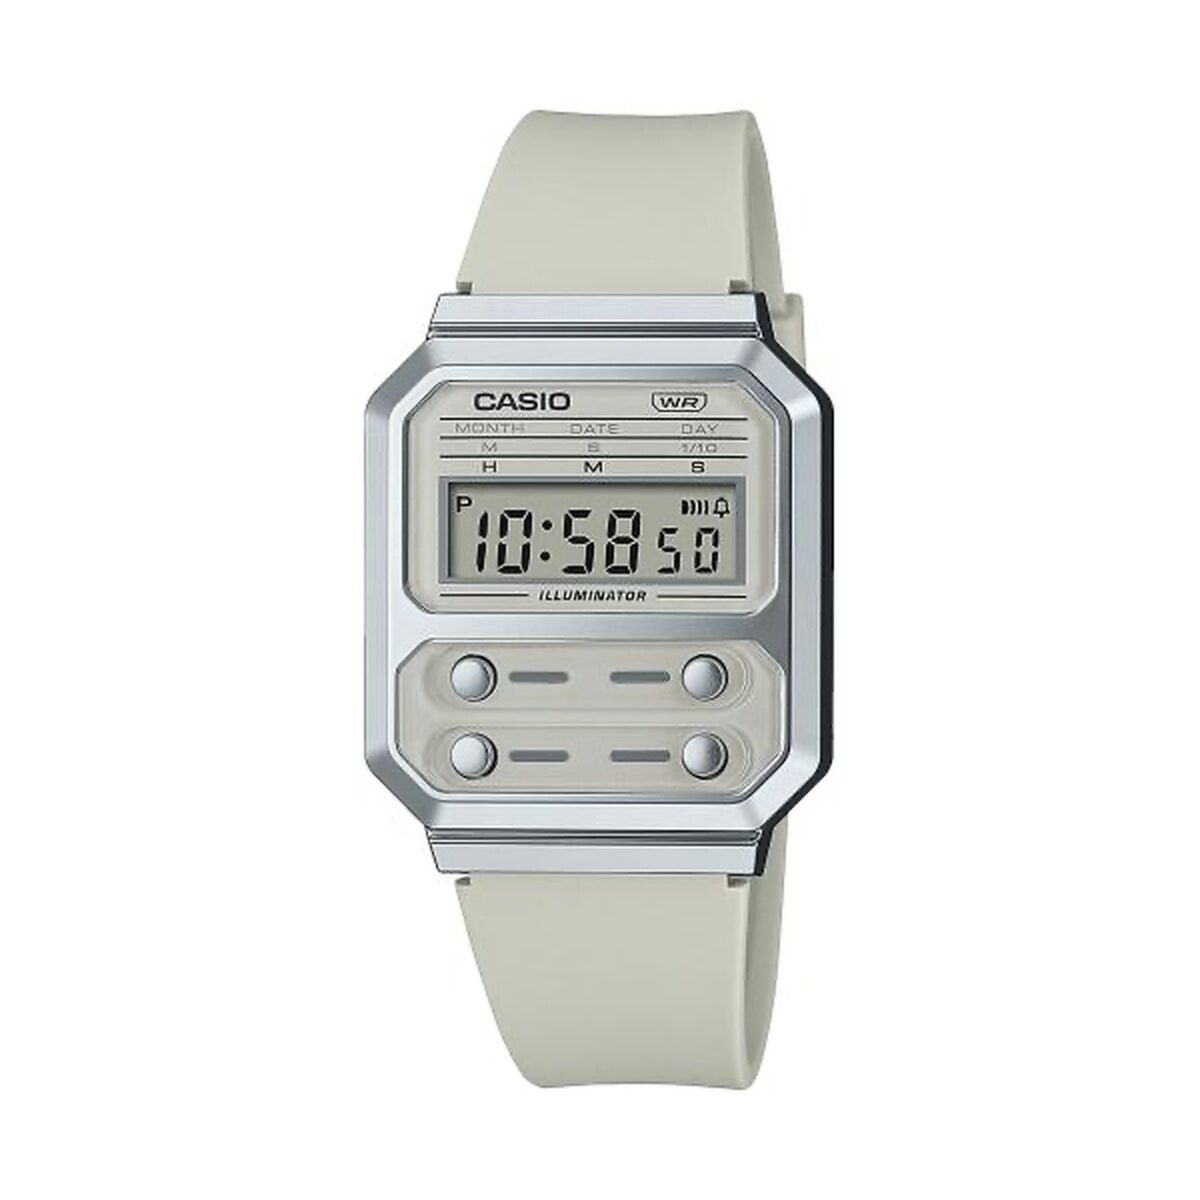 Kaufe Unisex-Uhr Casio F100 TRIBUTE - CREAM WHITE (Ø 40 mm) bei AWK Flagship um € 57.00